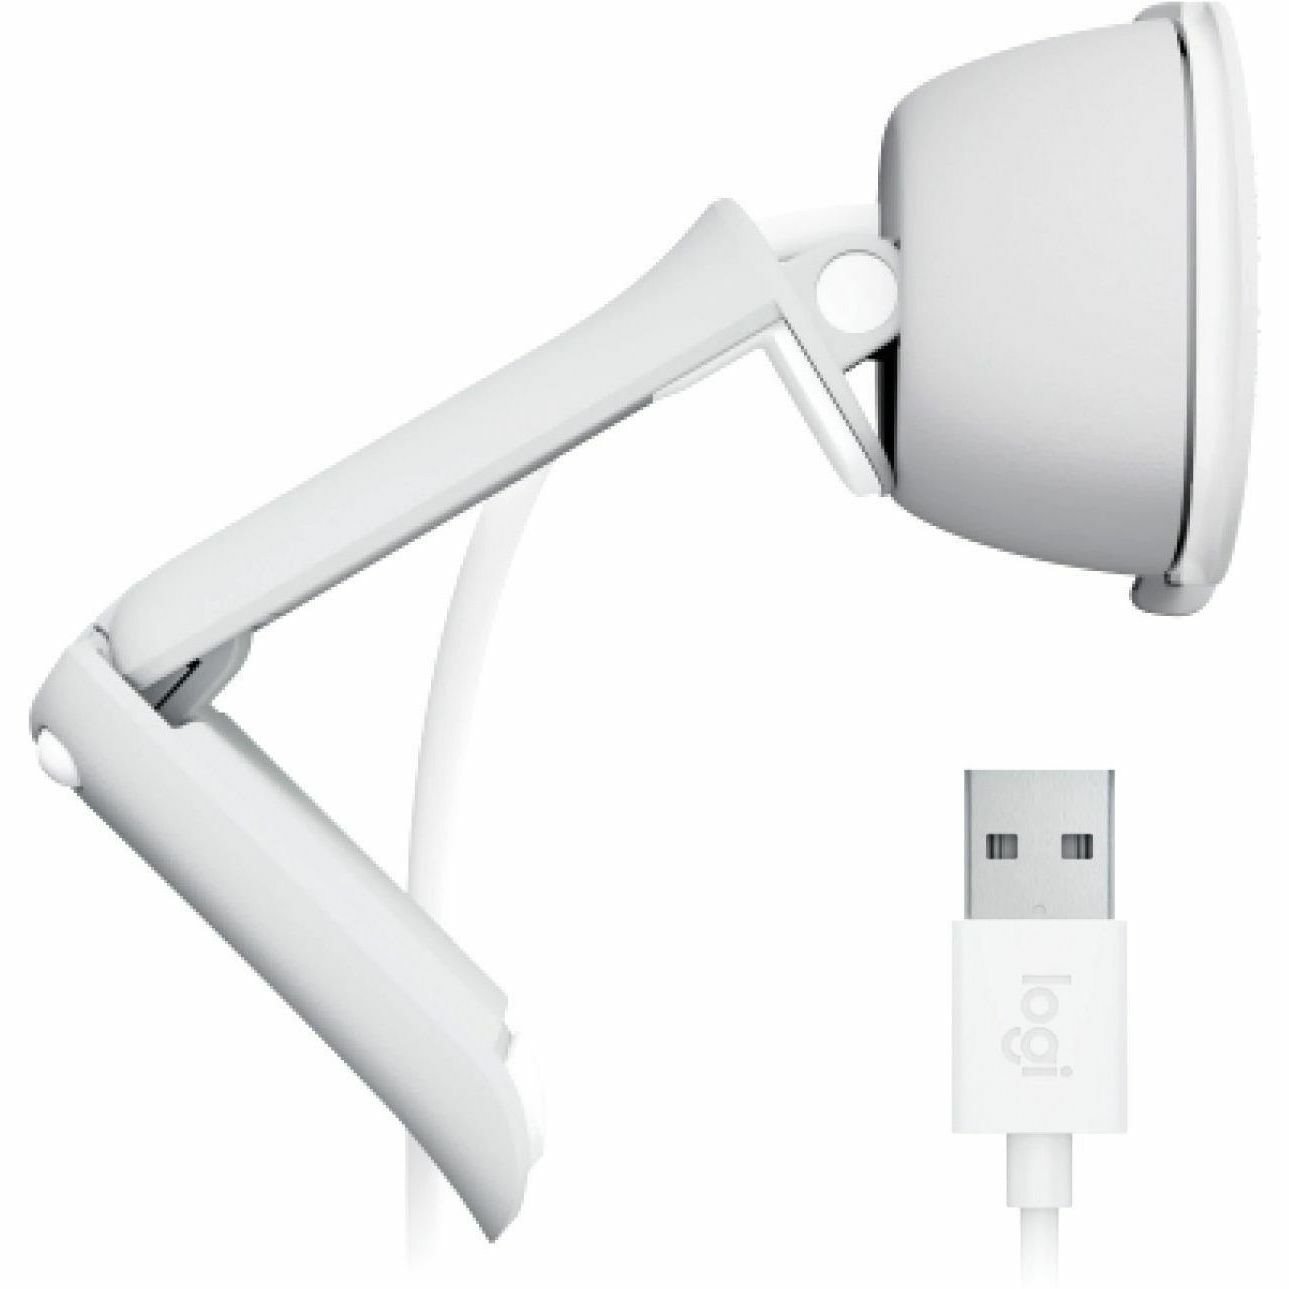 Logitech BRIO 100 Webcam - 2 Megapixel - 30 fps - Off White - USB Type A